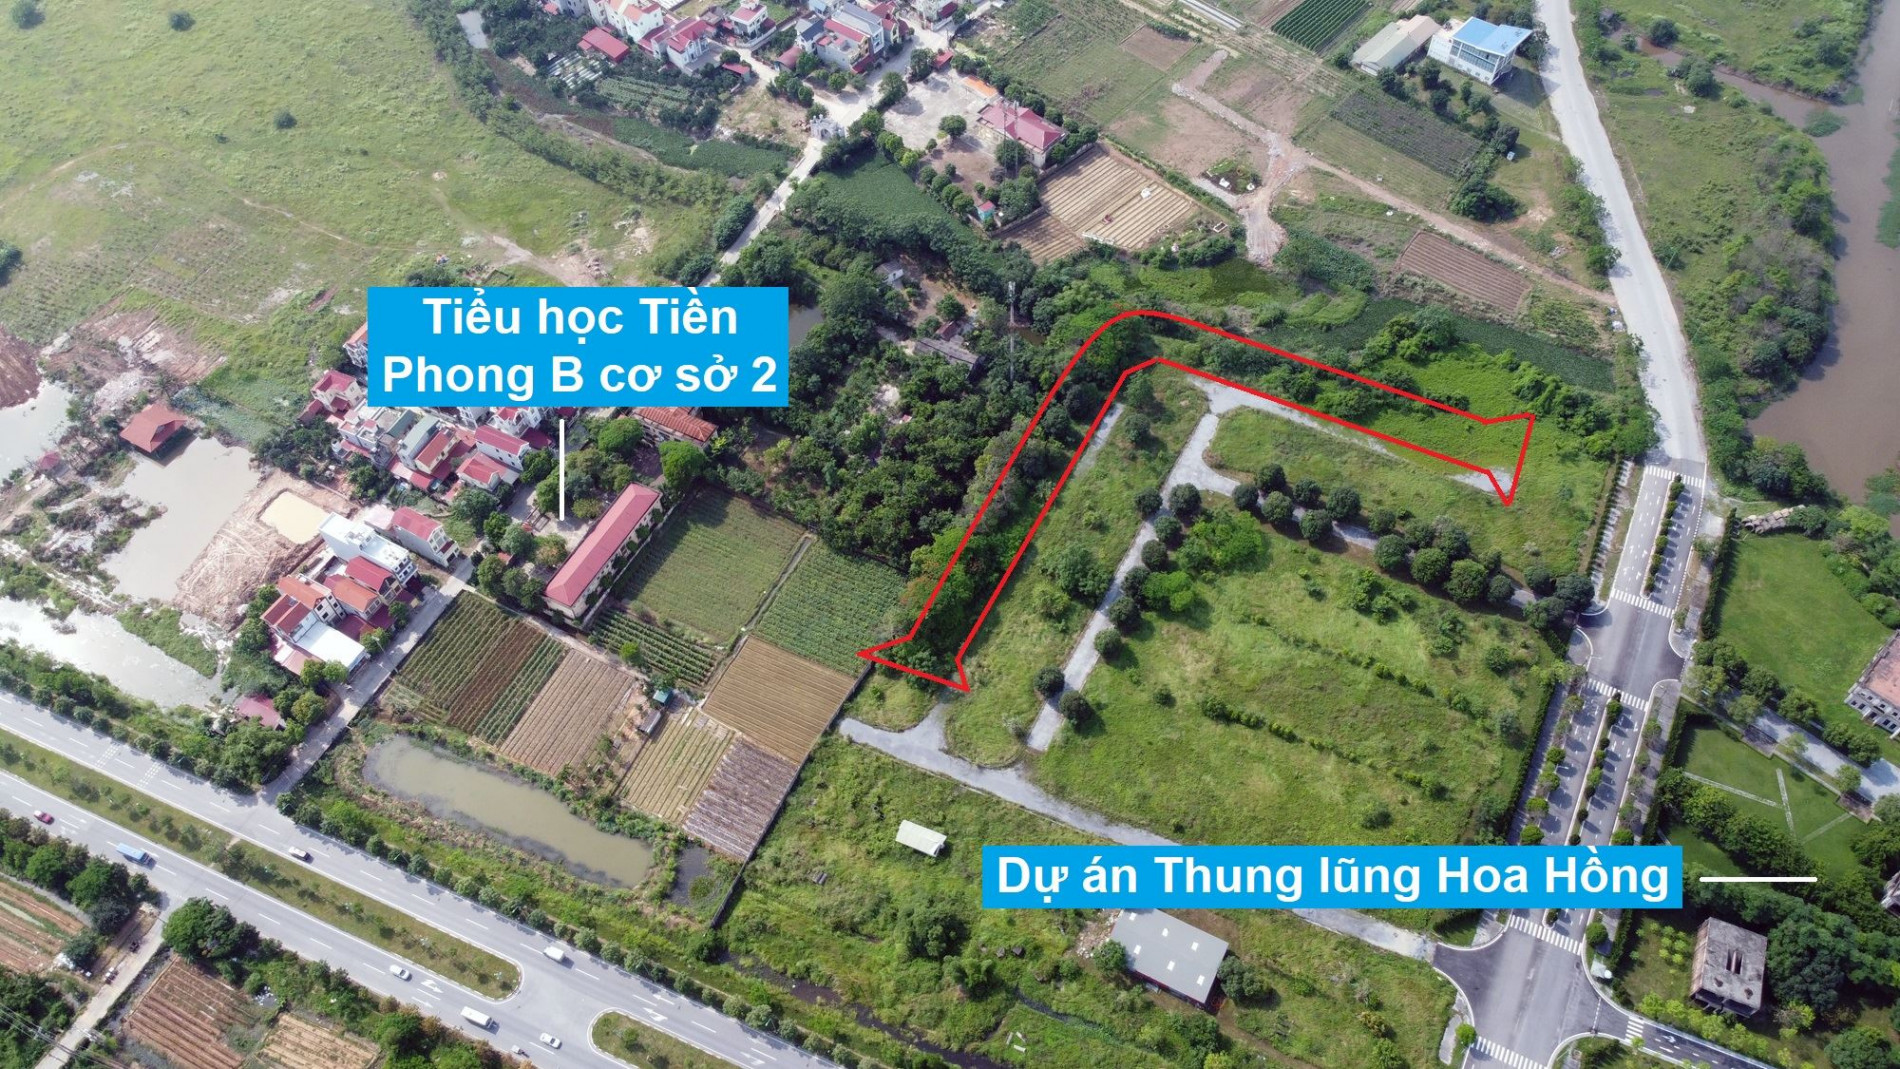 Những khu đất sắp thu hồi để mở đường ở xã Tiền Phong, Mê Linh, Hà Nội (phần 4)